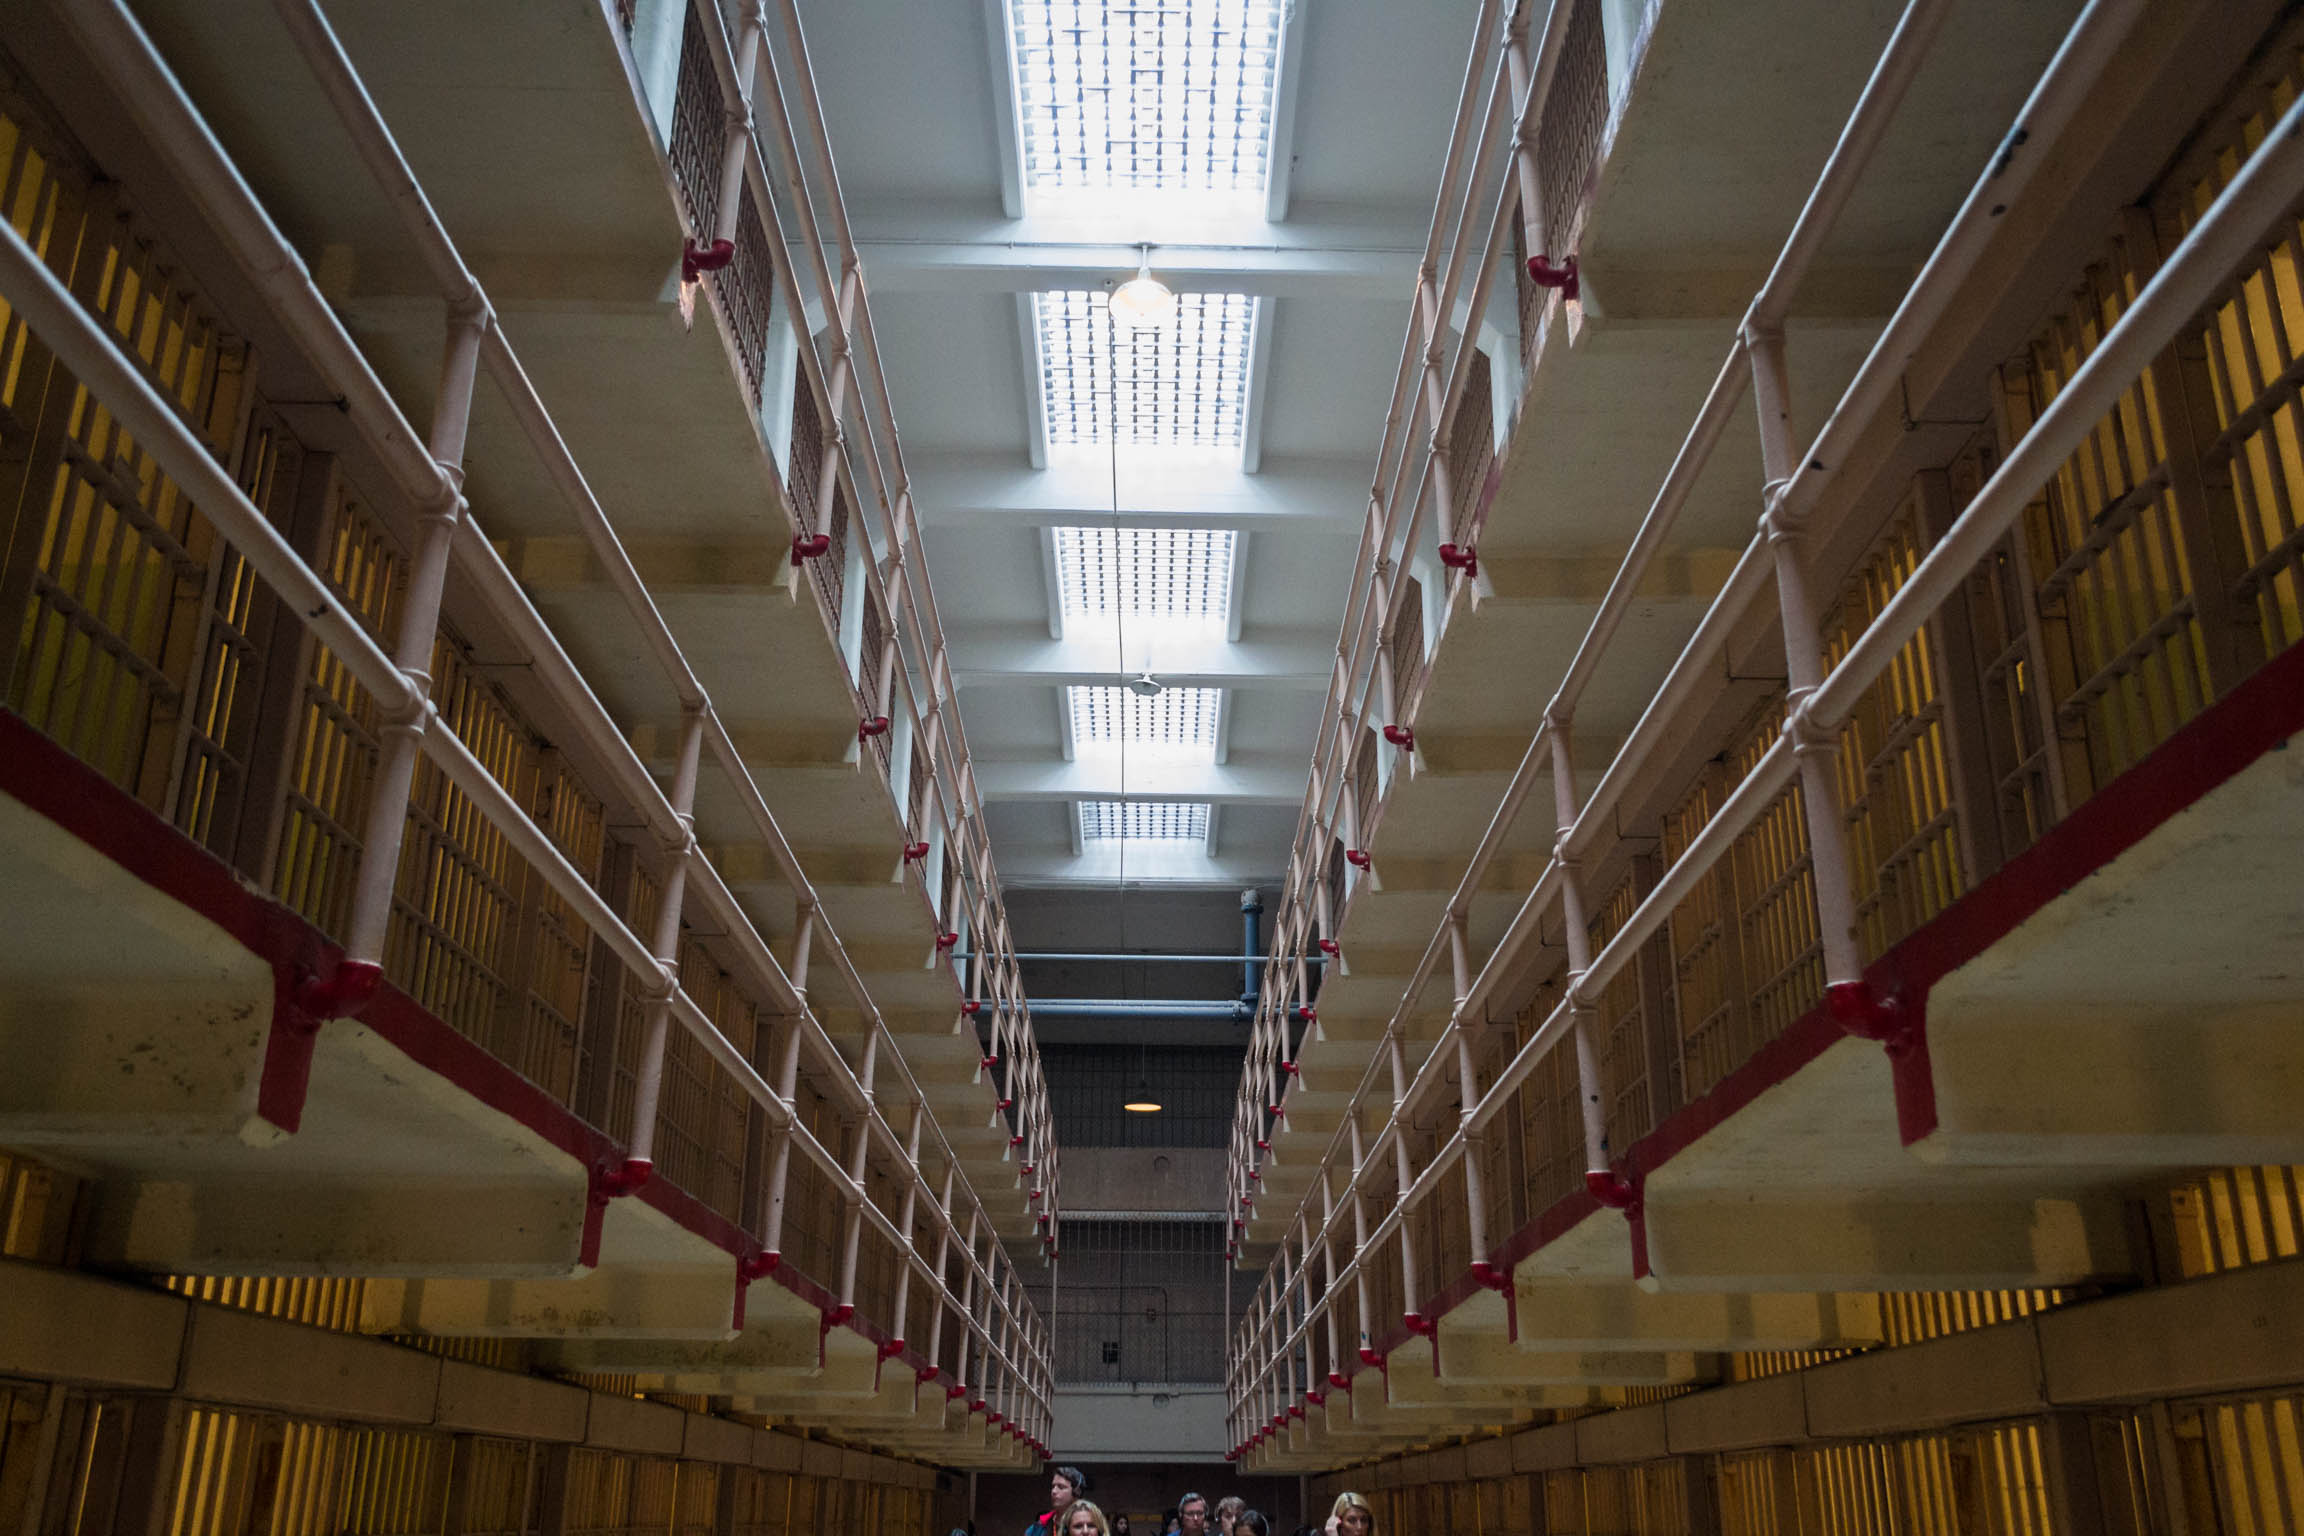 Les allées de la prison, des rangées de cellules sur 3 étages organisées en blocs